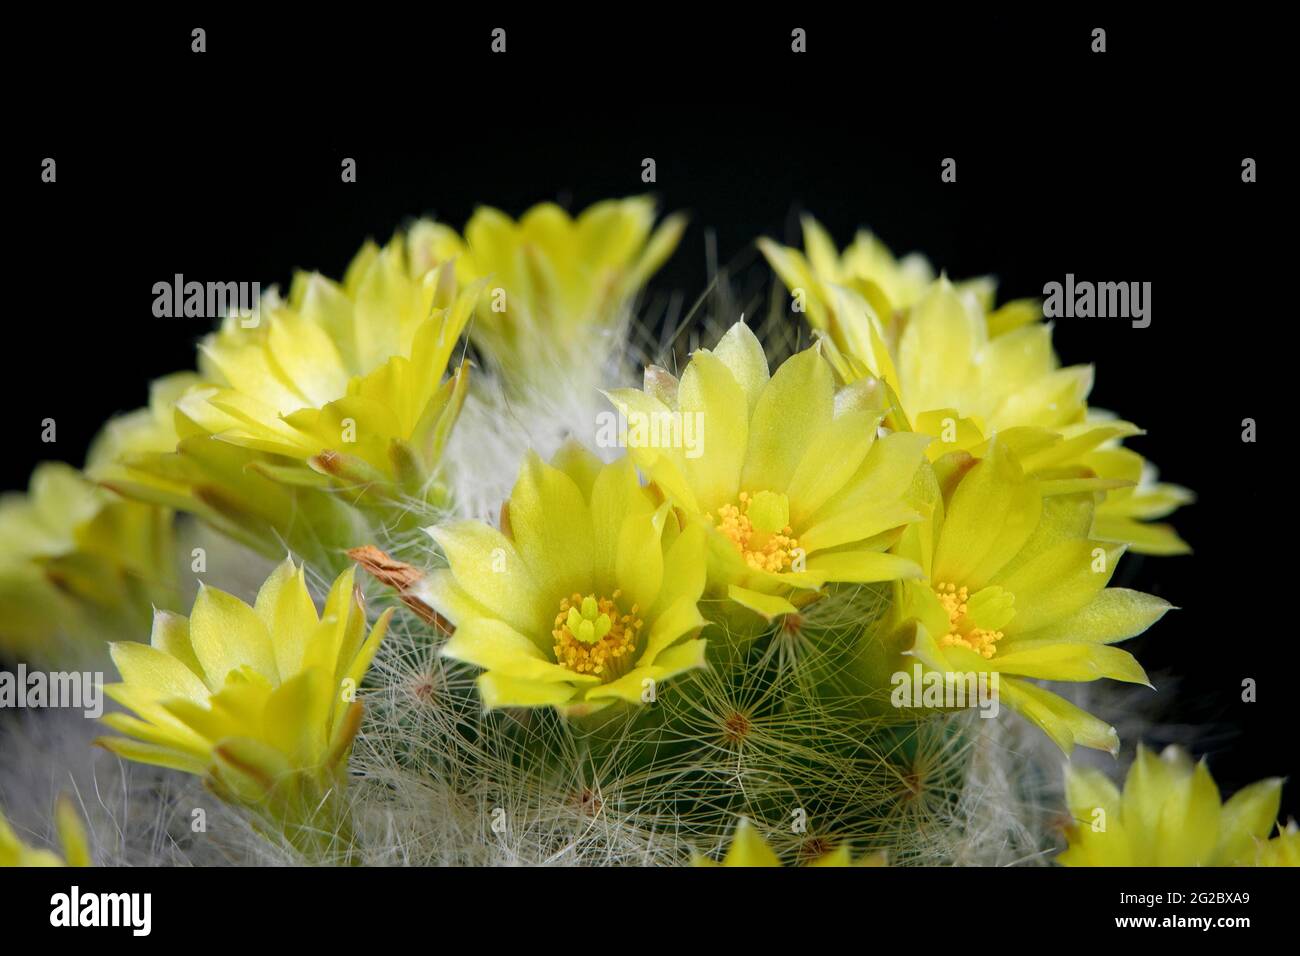 yellow flower of mammillaria cactus blooming against dark background Stock Photo